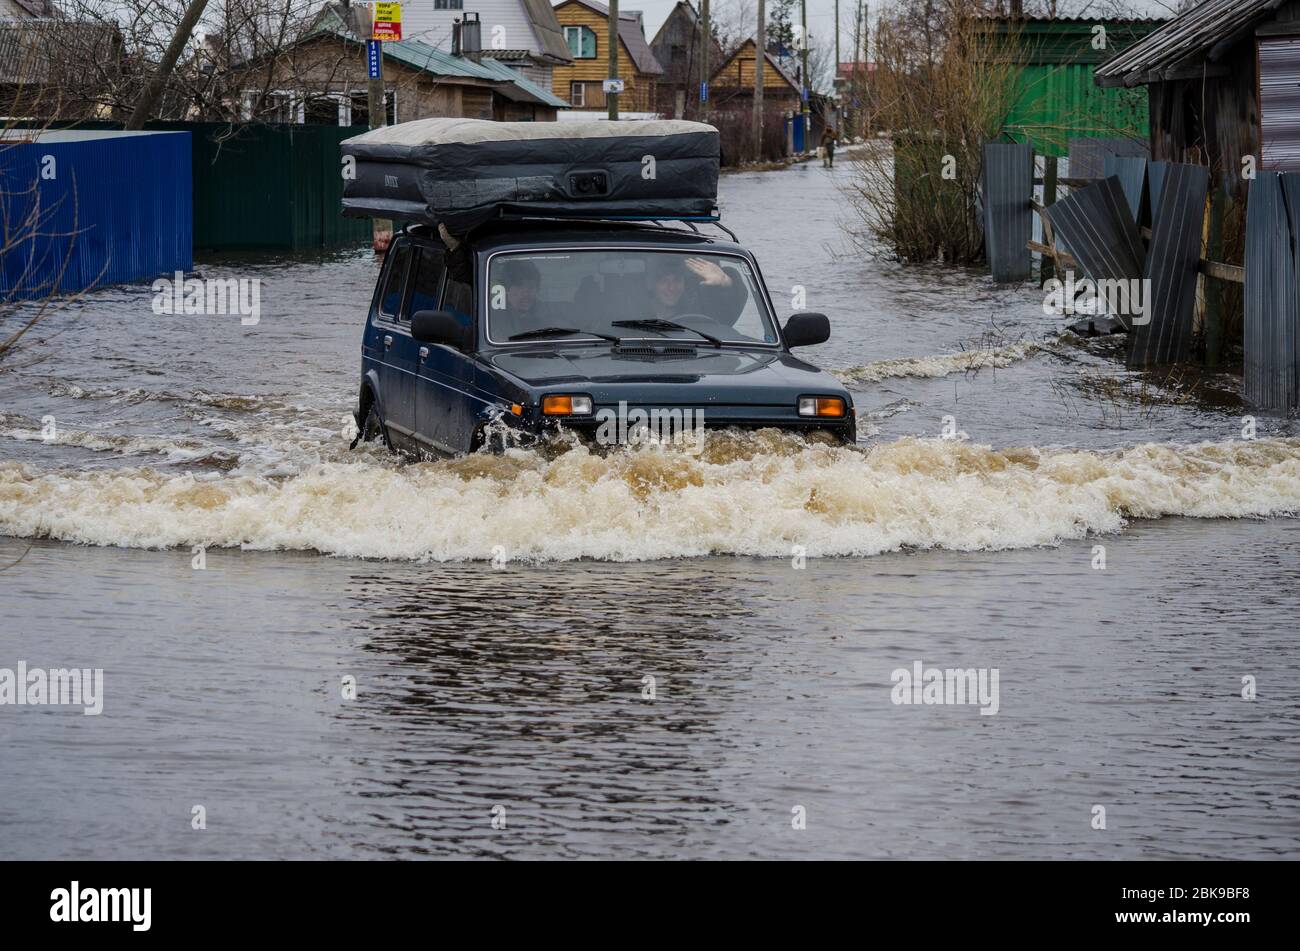 Mai 2020 - Archangelsk. Russische Offroad-Auto Niva fährt auf einer überfluteten Straße. Russland, Region Archangelsk Stockfoto